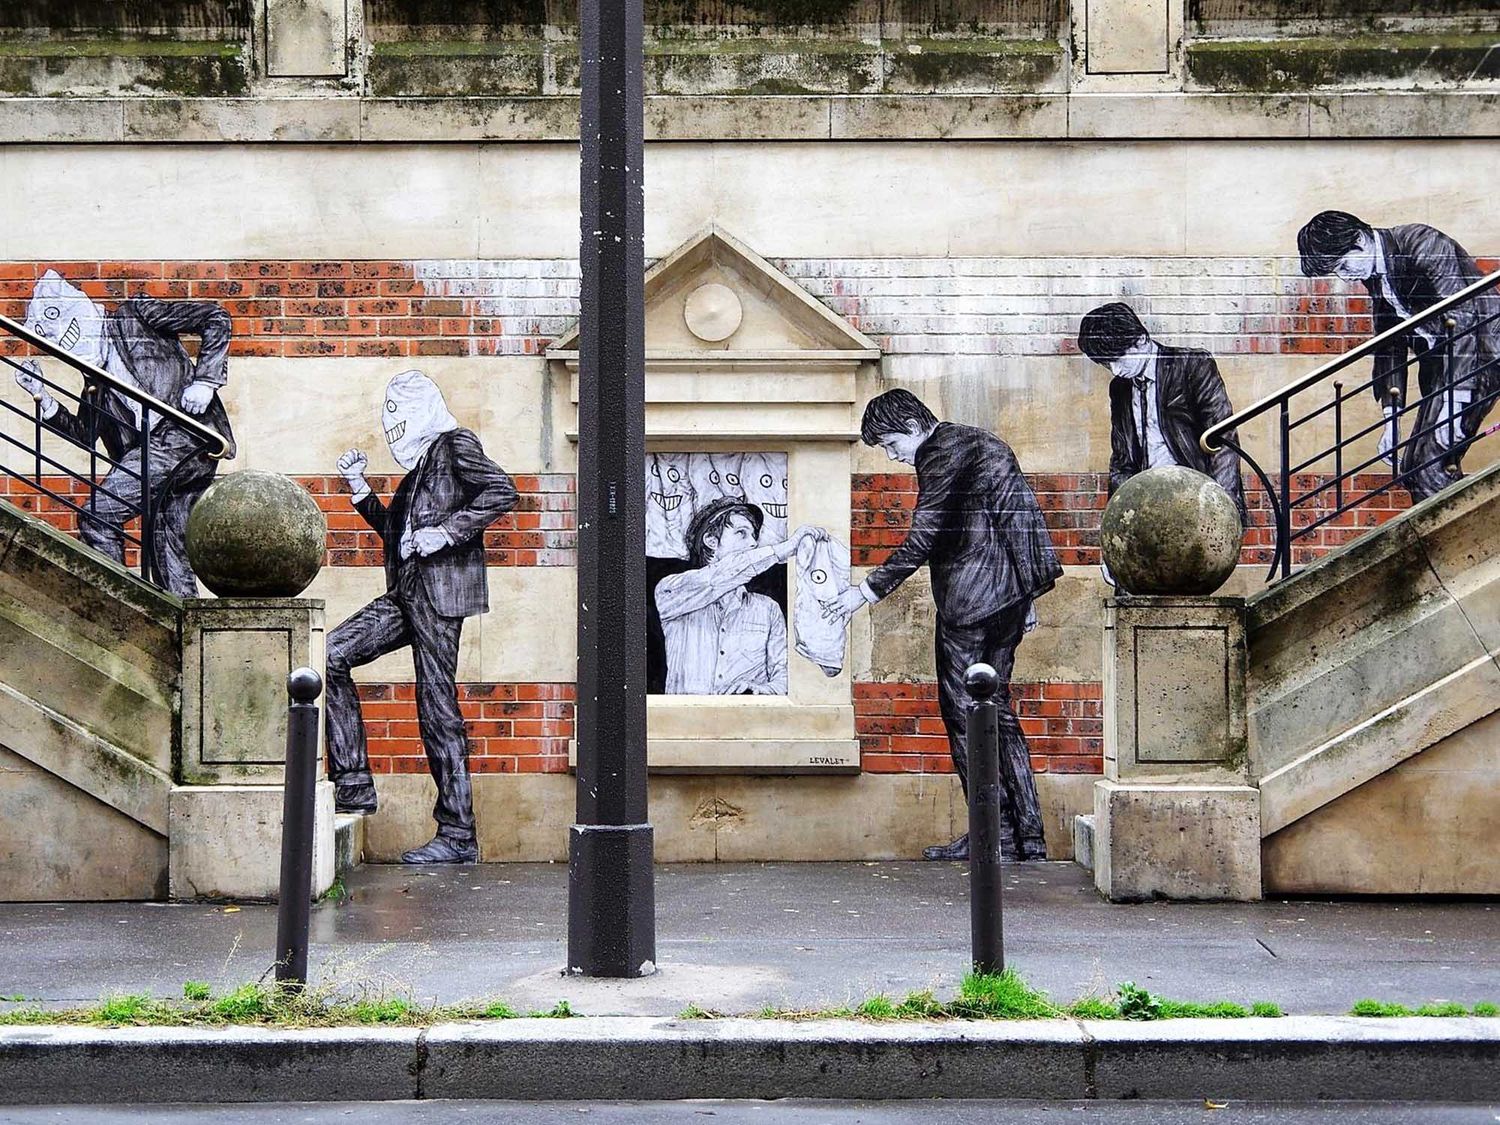 Avec le pochoir, le collage est une des techniques les plus utilisés aujourd’hui par les artistes urbains à l’image de Levalet qui créé de véritables scènes dans les rues avec son personnage (©Levalet).